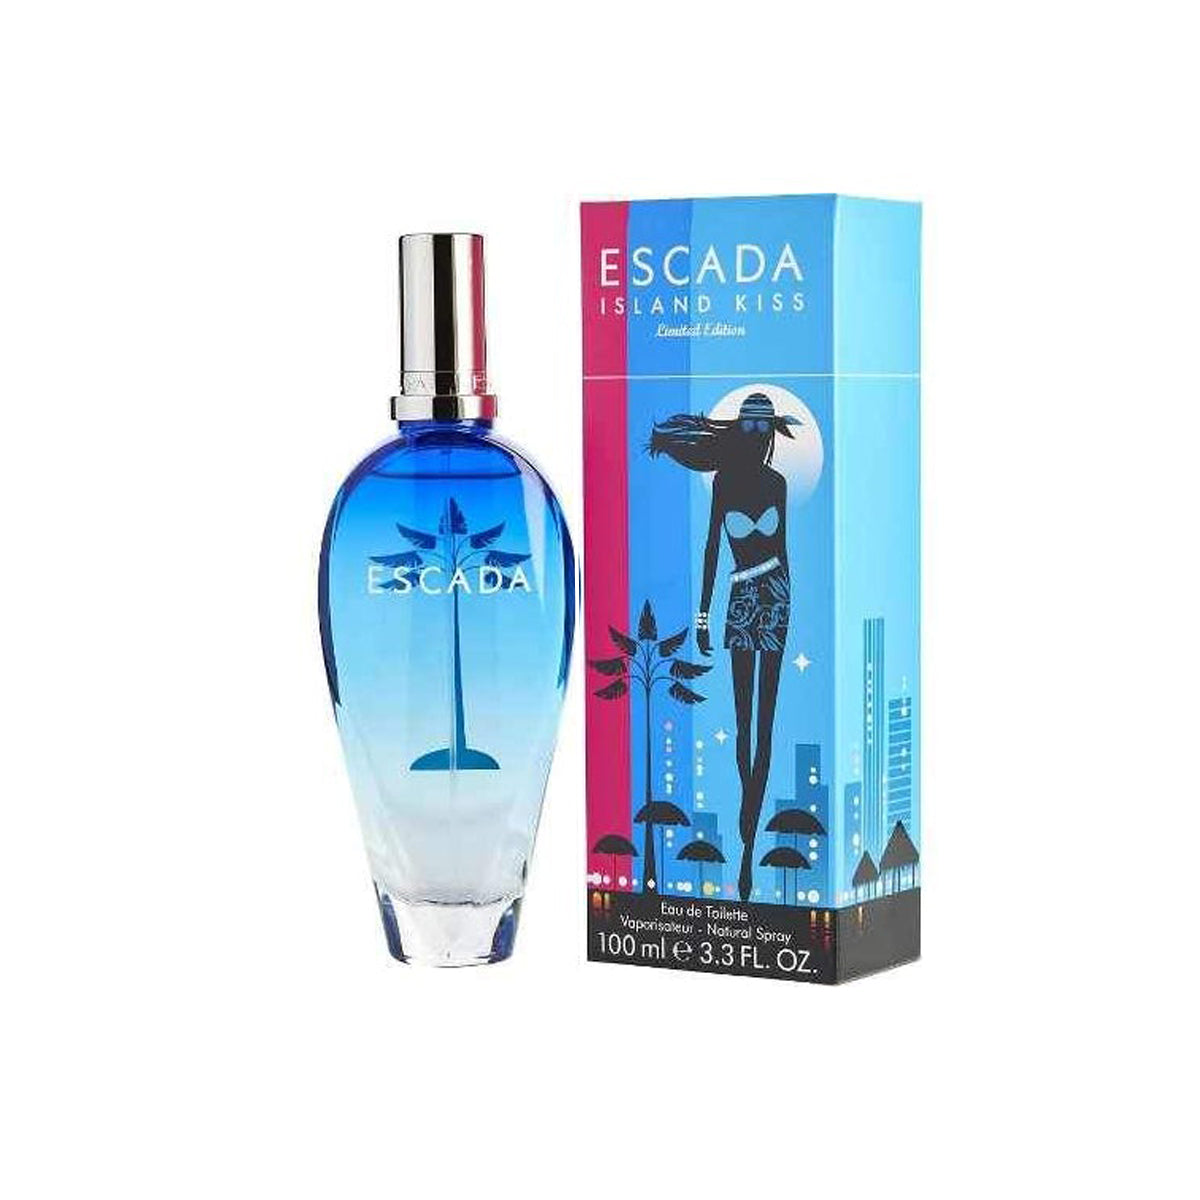 Escada Island Kiss Limited Edition Edt 100 ml Mujer